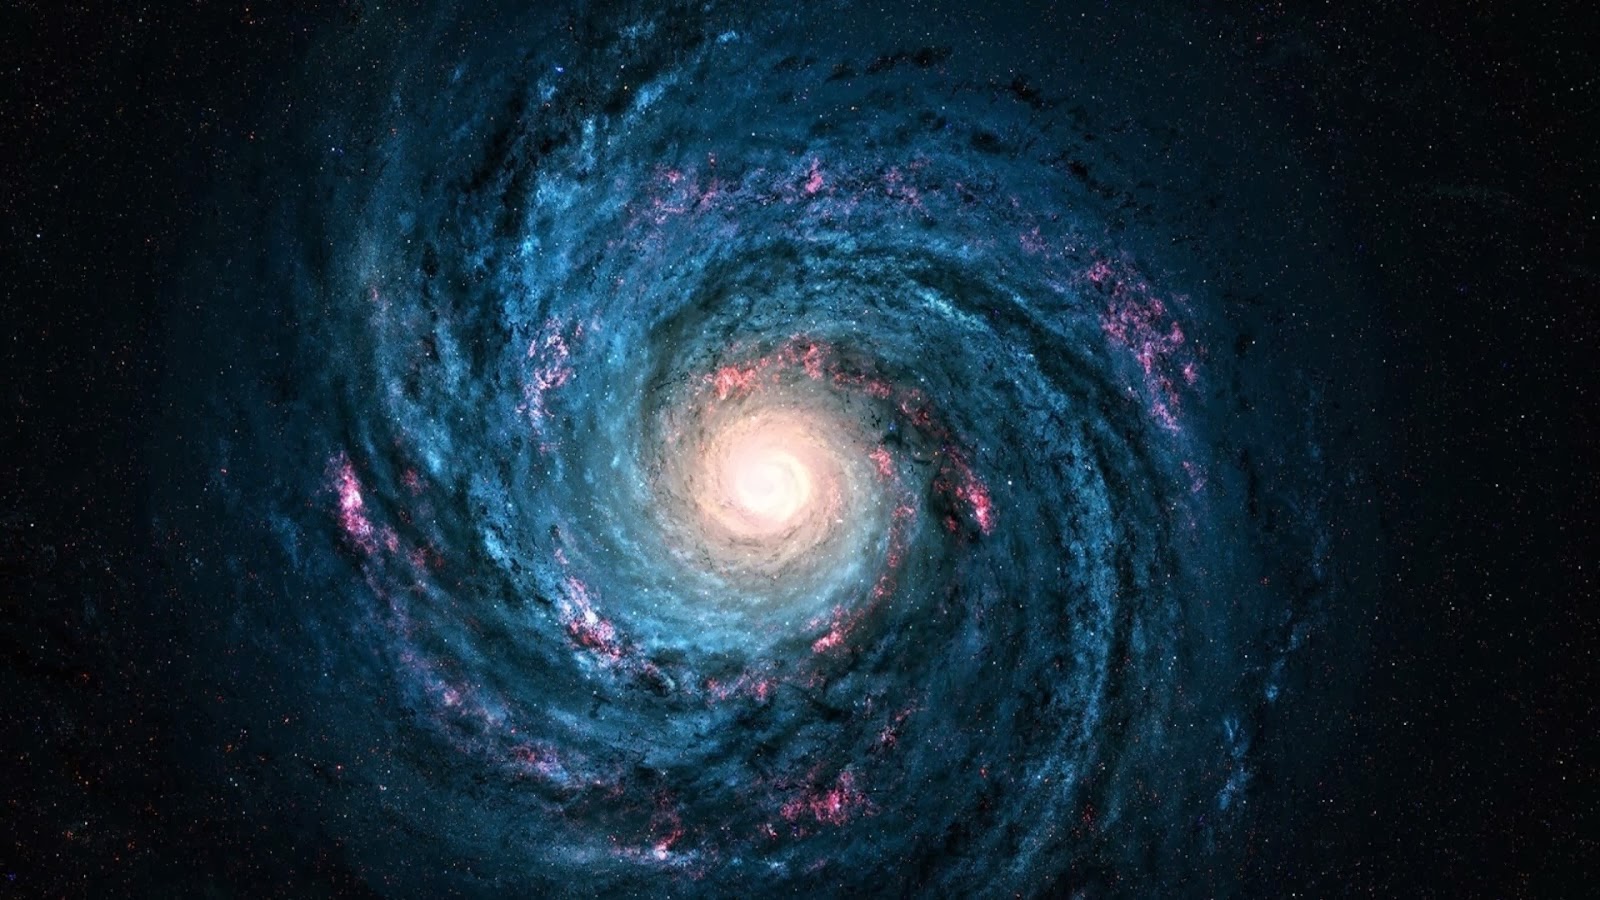 Space Milky Way Galaxy HD Wallpaper 1080p